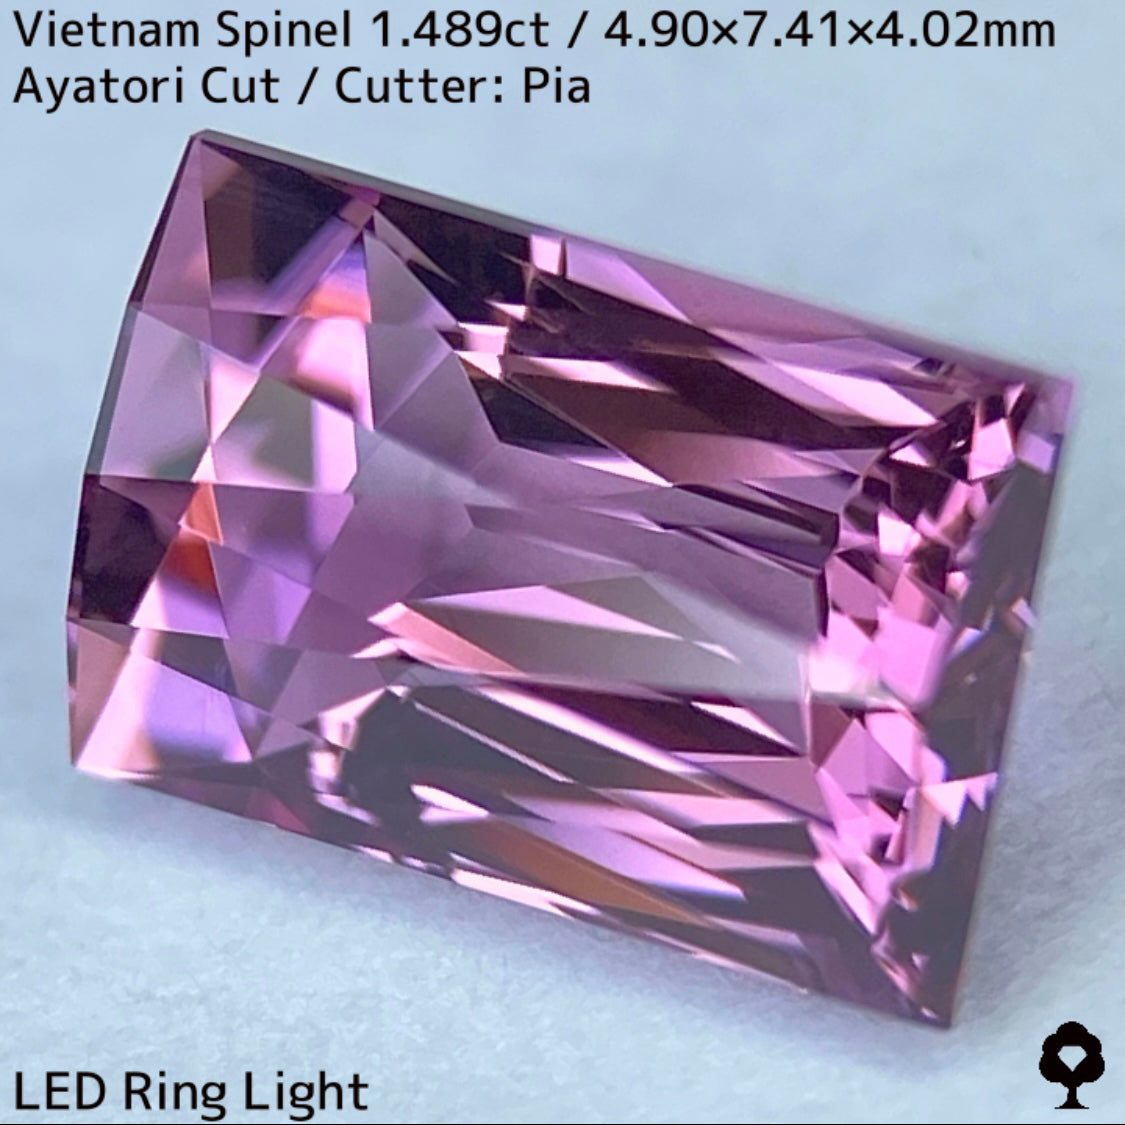 ベトナム産スピネル1.489ct★妖艶なピンキッシュパープルの超美結晶原石の形を生かしたシザースのあやとりカット